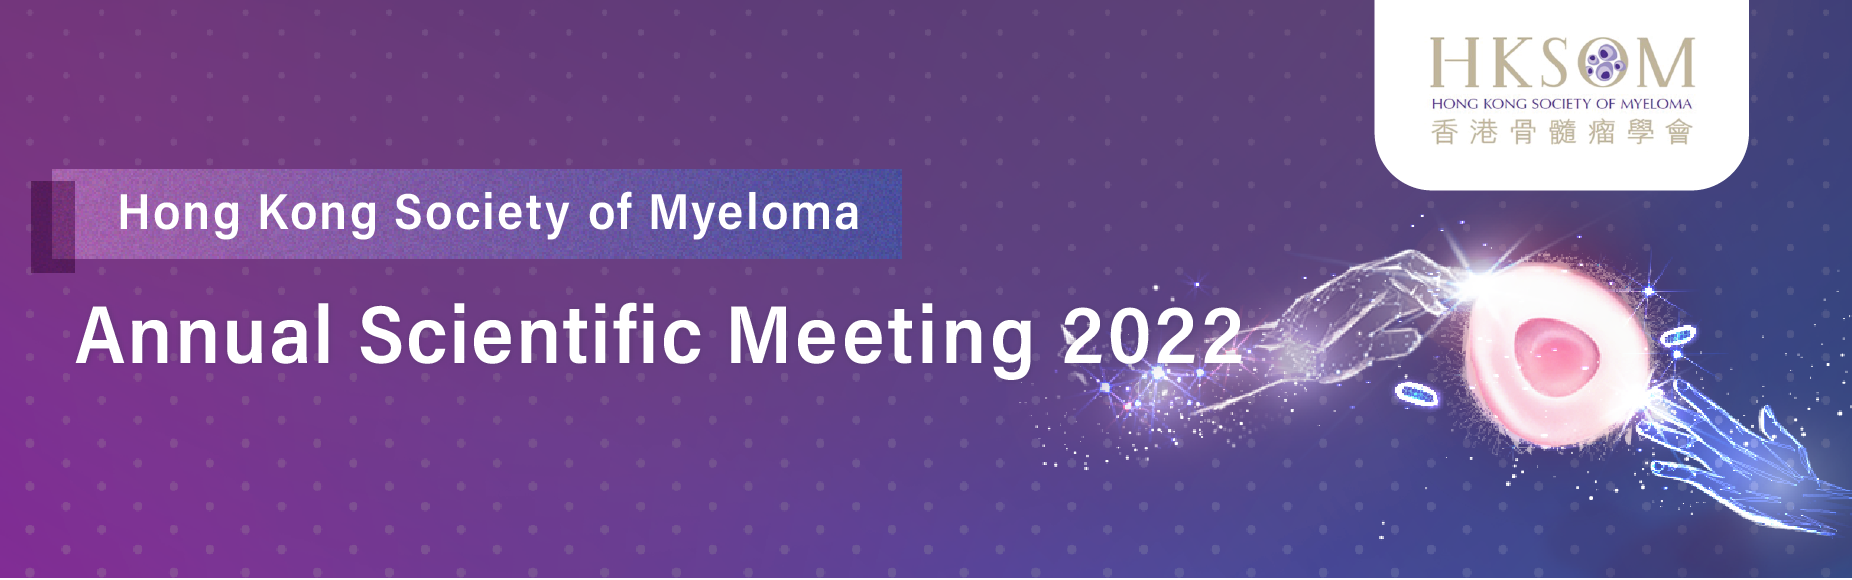 Annual Scientific Meeting 2022